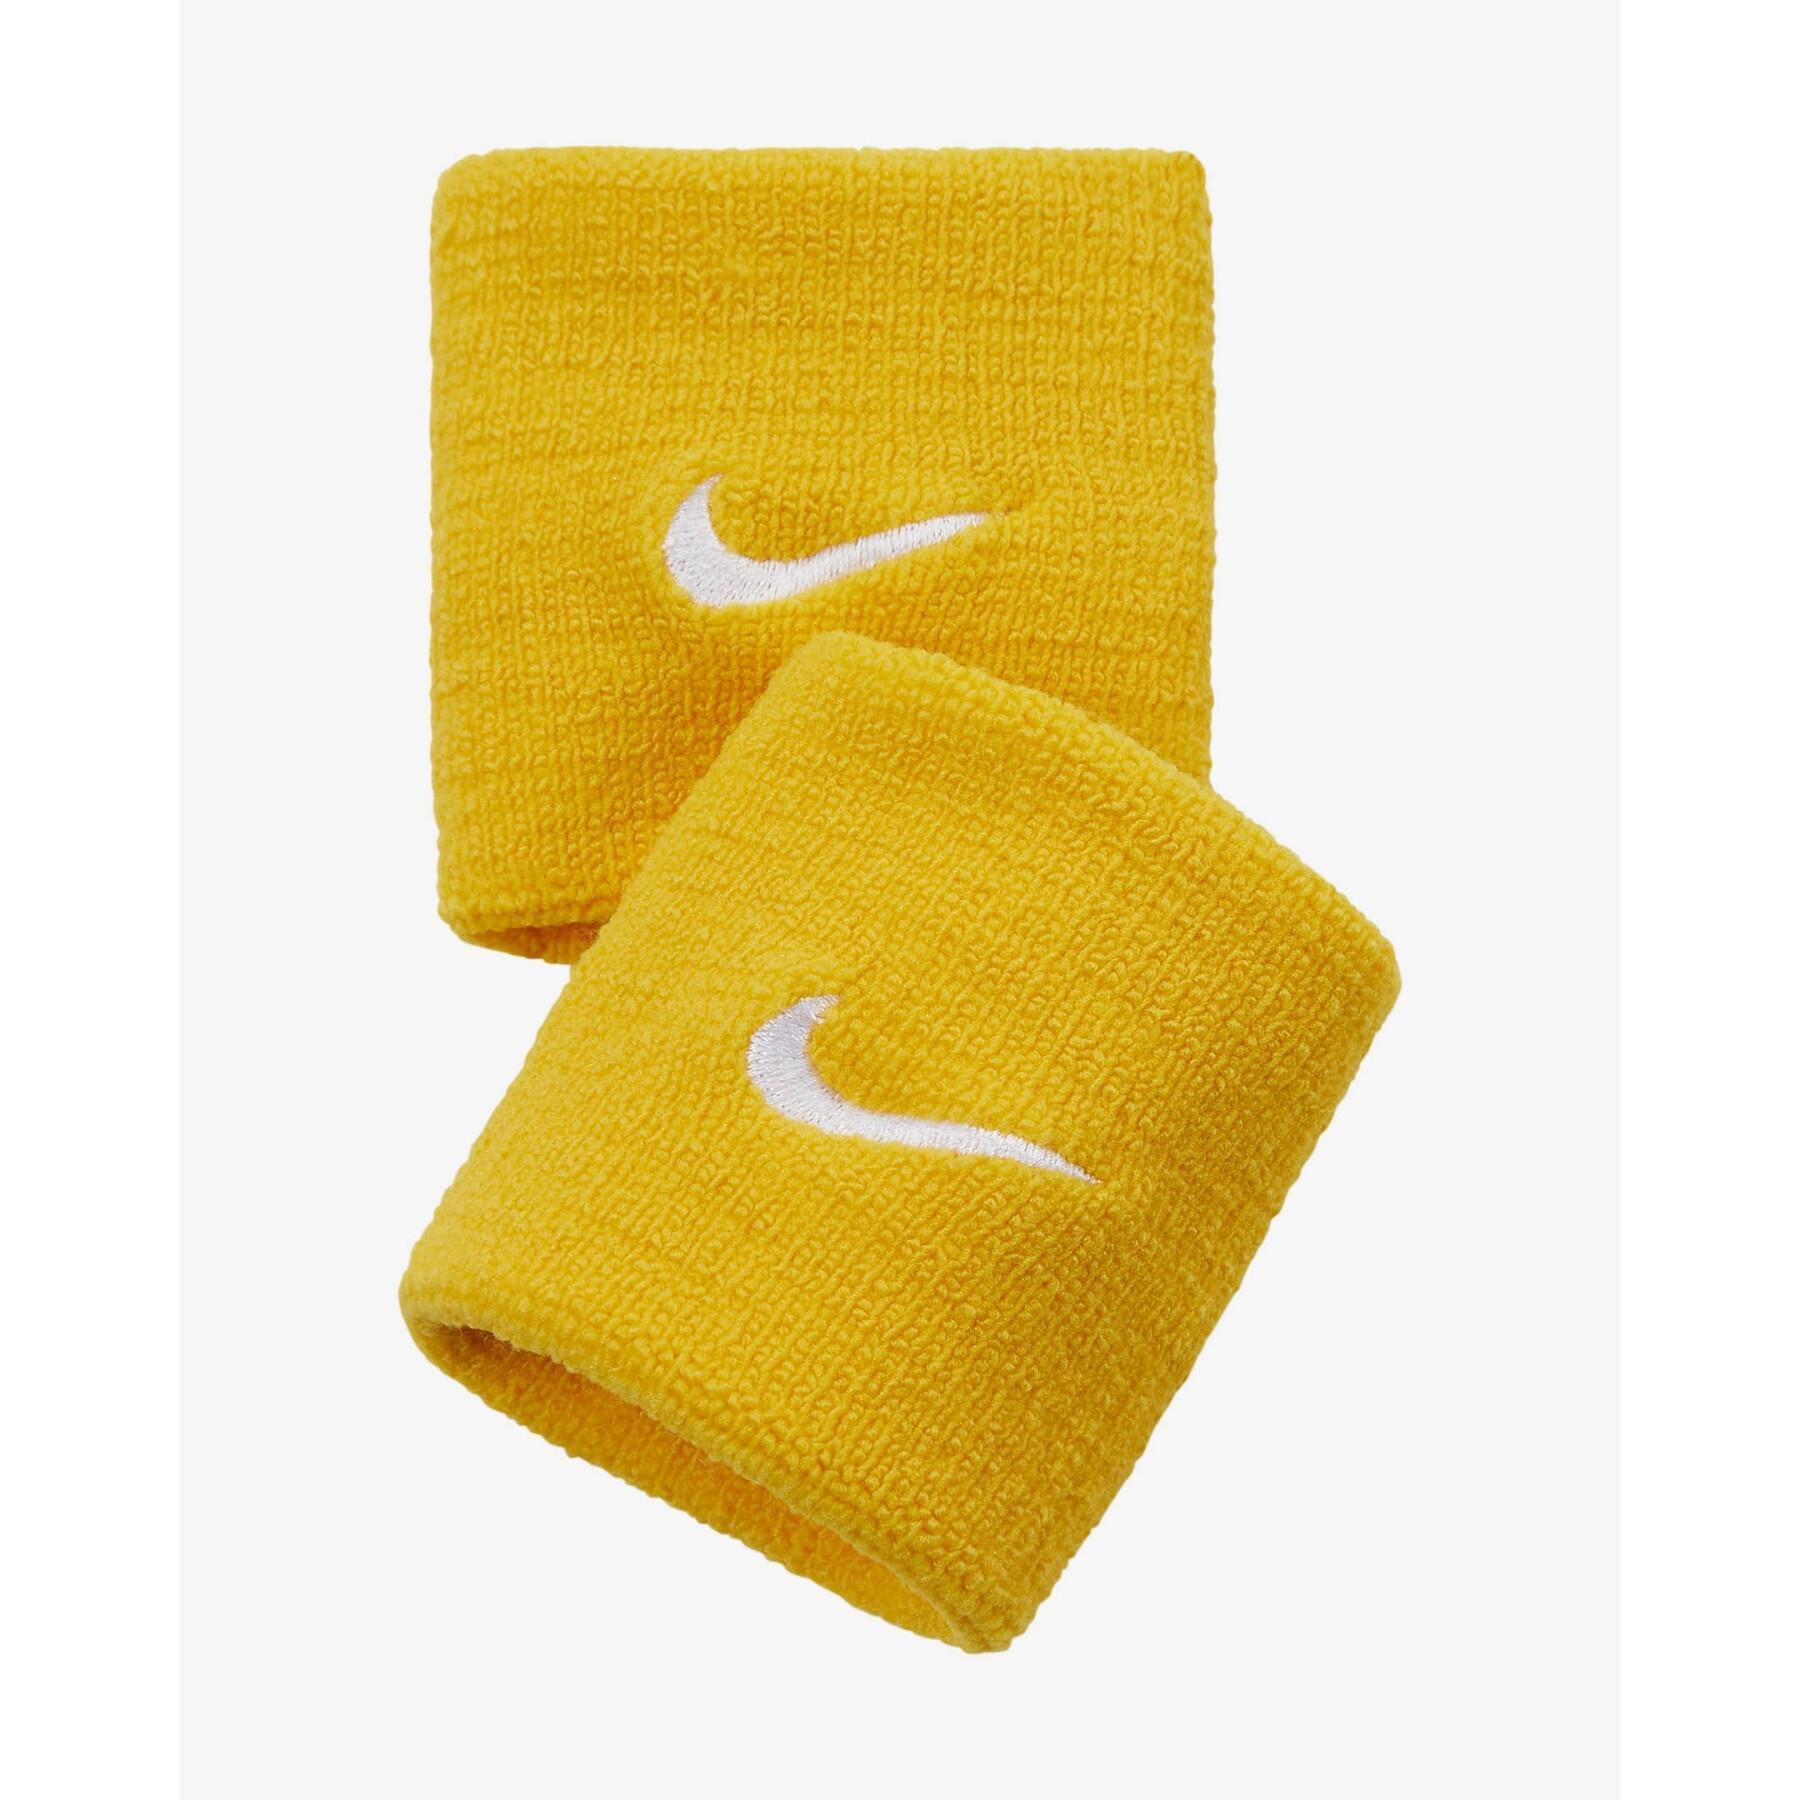 Sponge wrist Nike premier